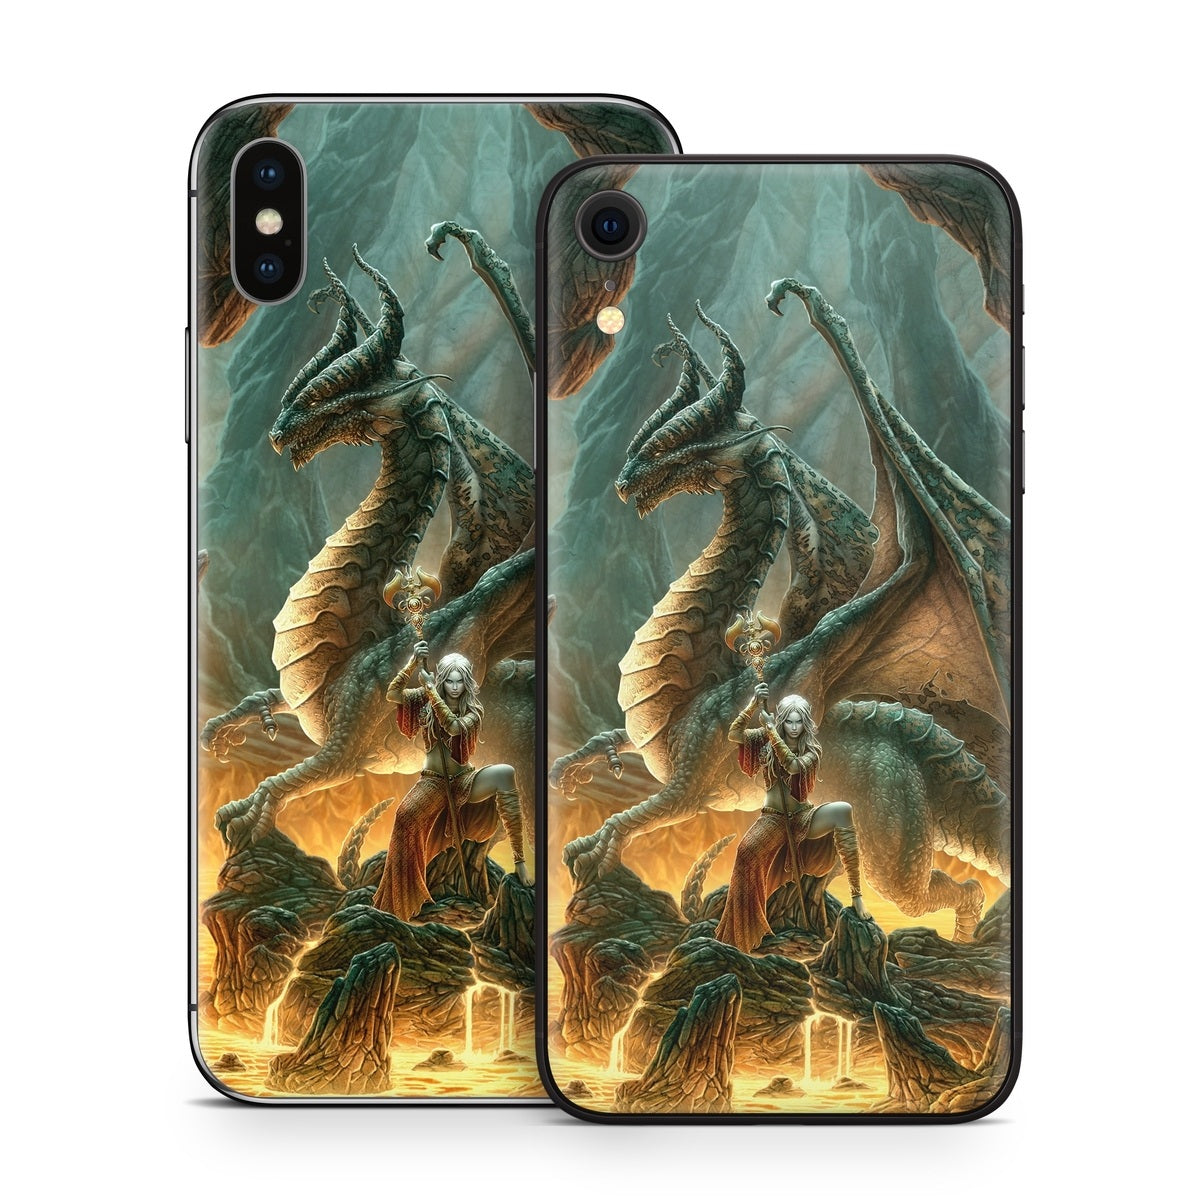 Dragon Mage - Apple iPhone X Skin